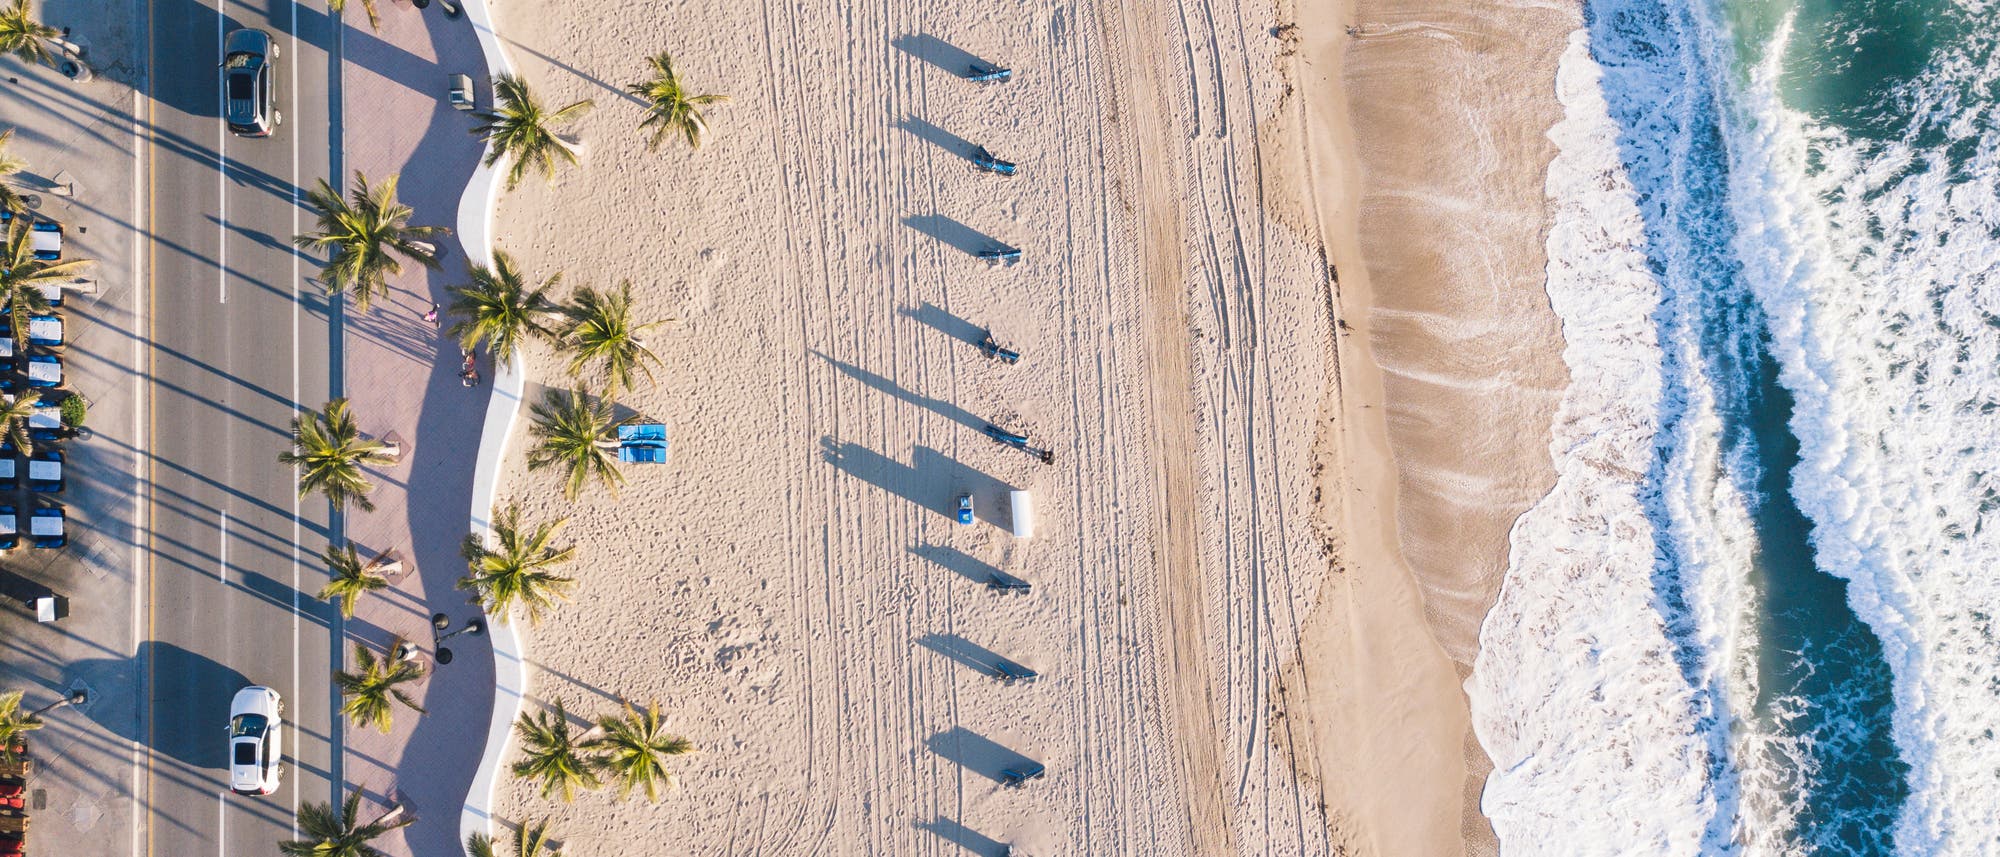 Das Bild zeigt einen Strand, an den rechts Wellen branden, während links eine Straße entlang läuft. Am Sandstrand selbst finden sich Rillen und Spuren im Sand.